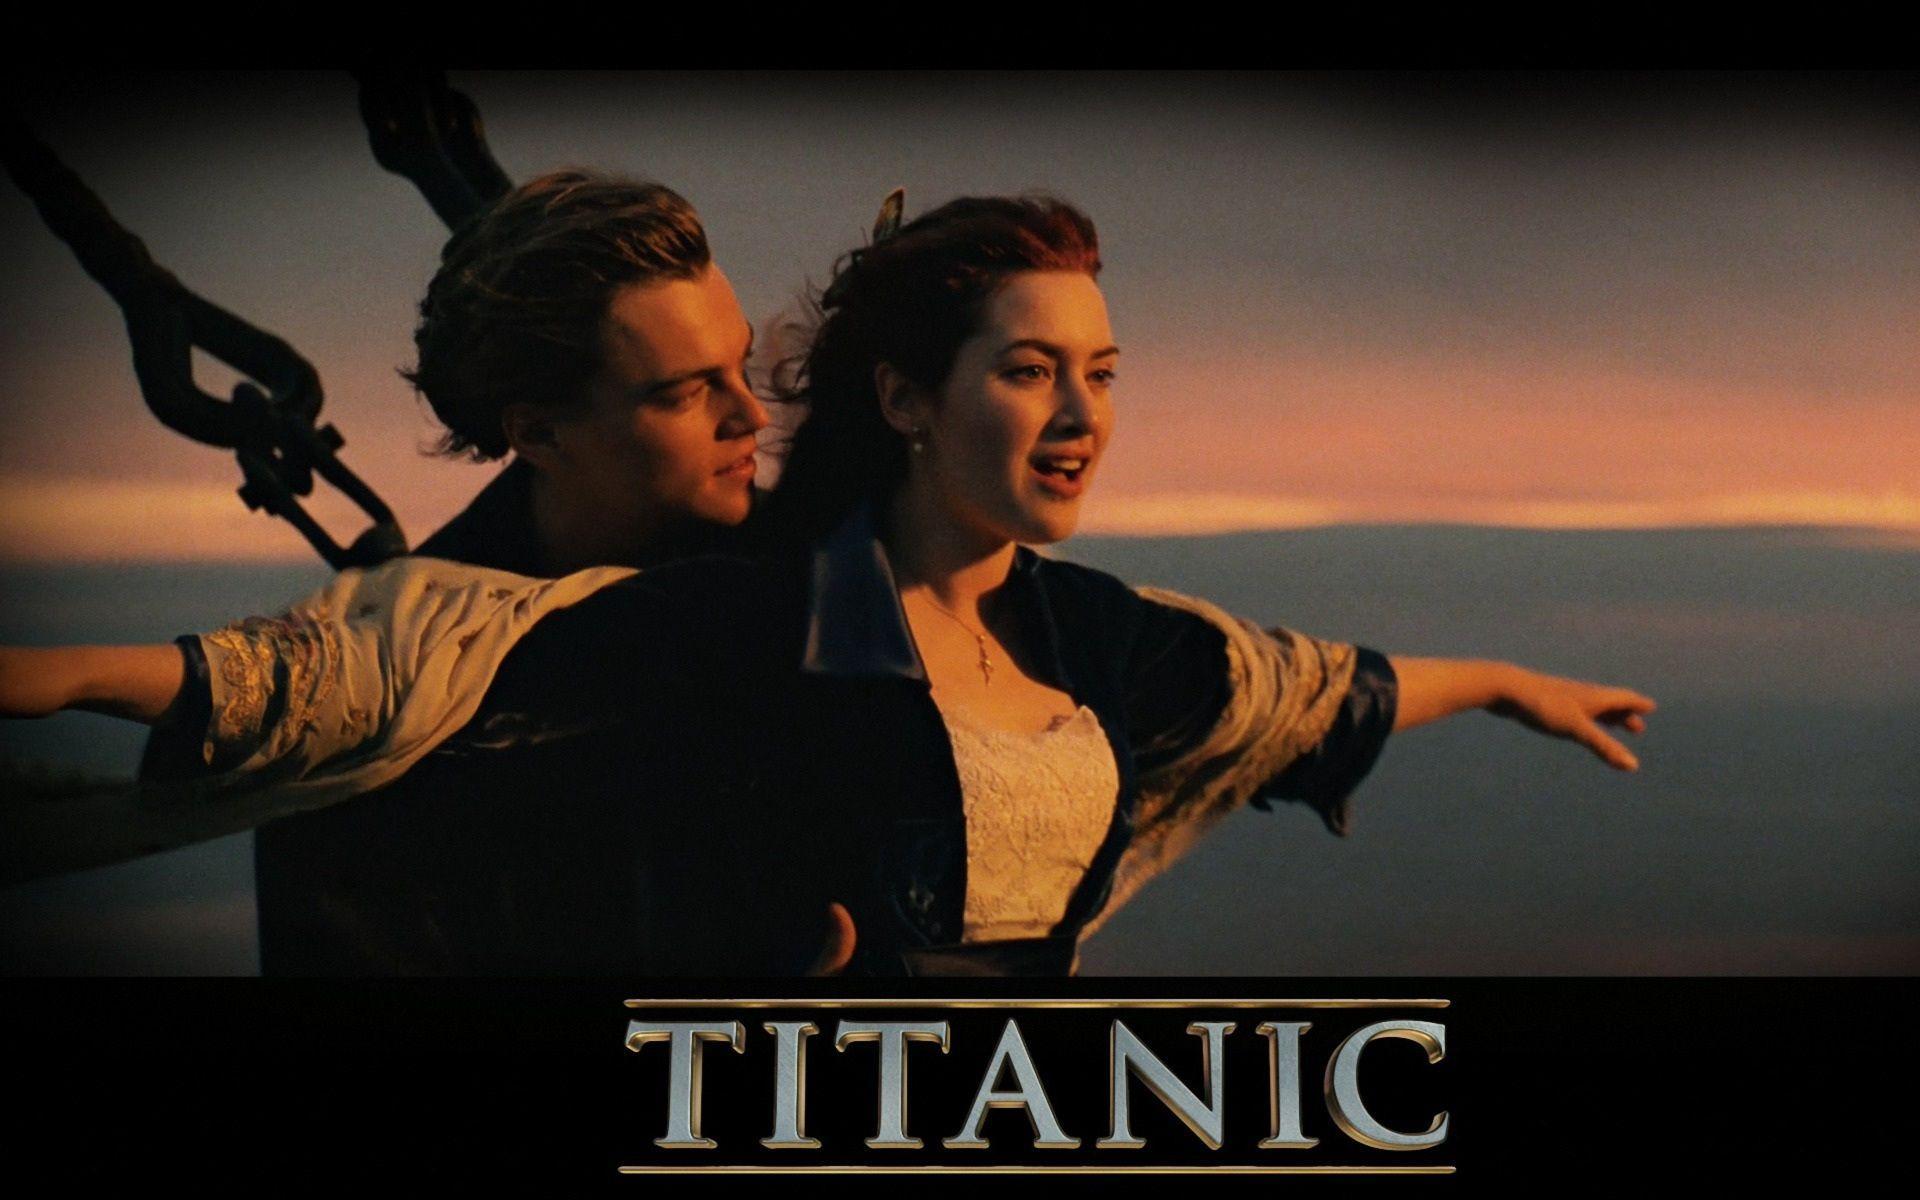 Titanic 3D Wallpaper, Widescreen 2. HD Desktop Wallpaper